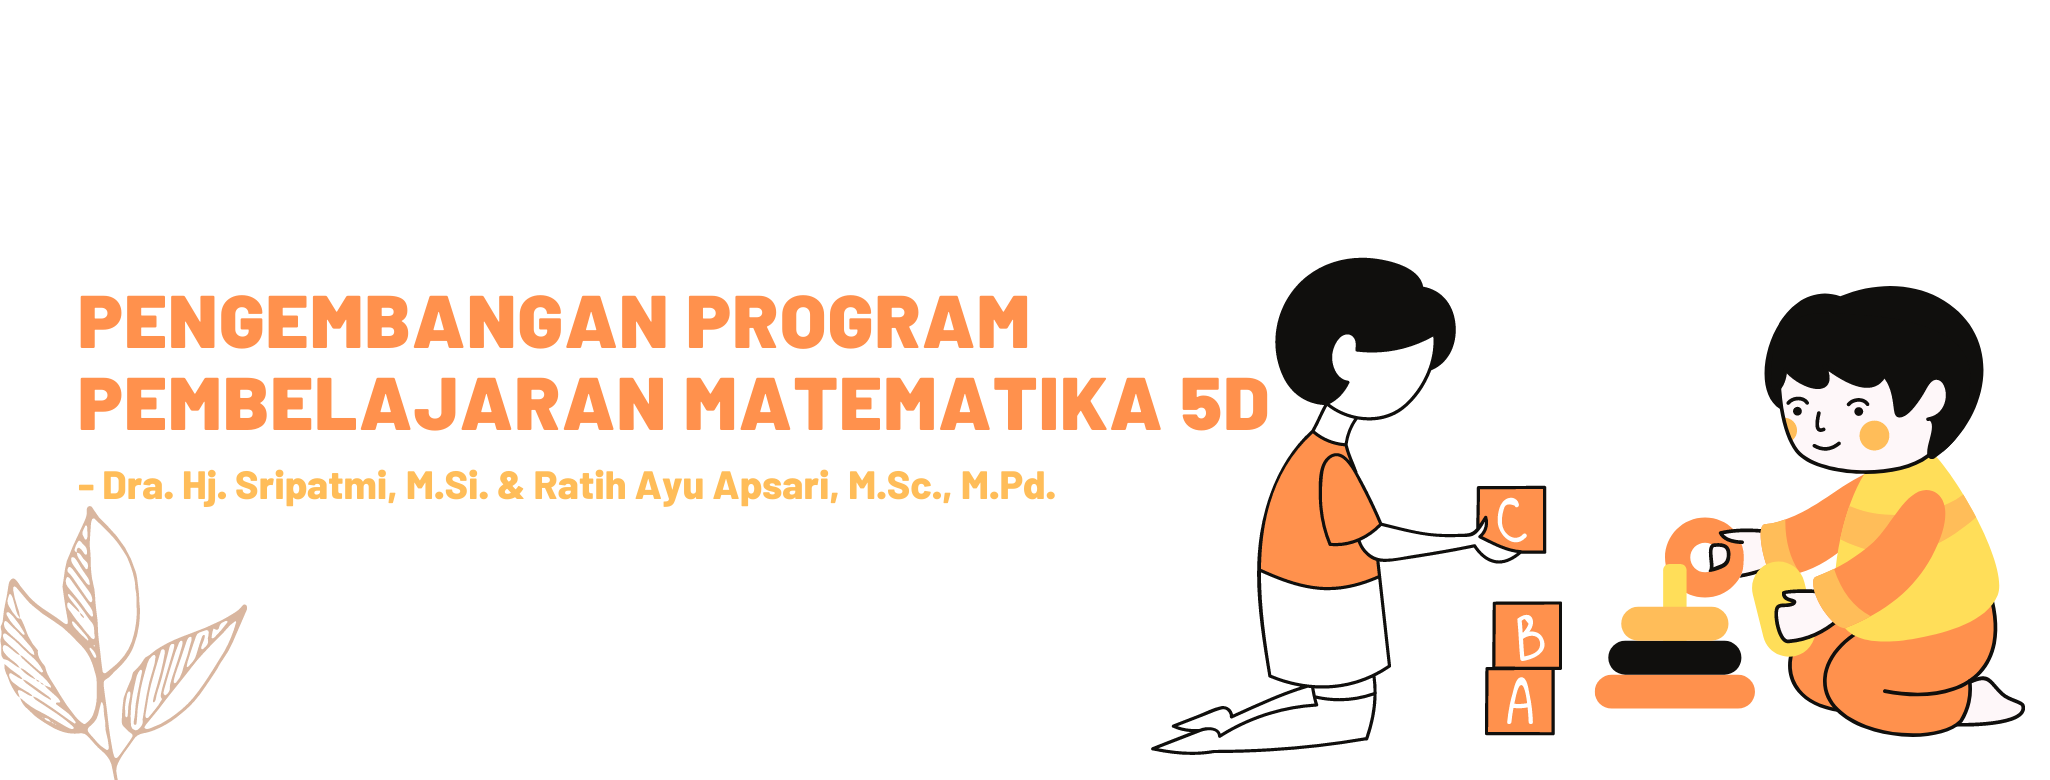 Pengembangan Program Pembelajaran Matematika 5D